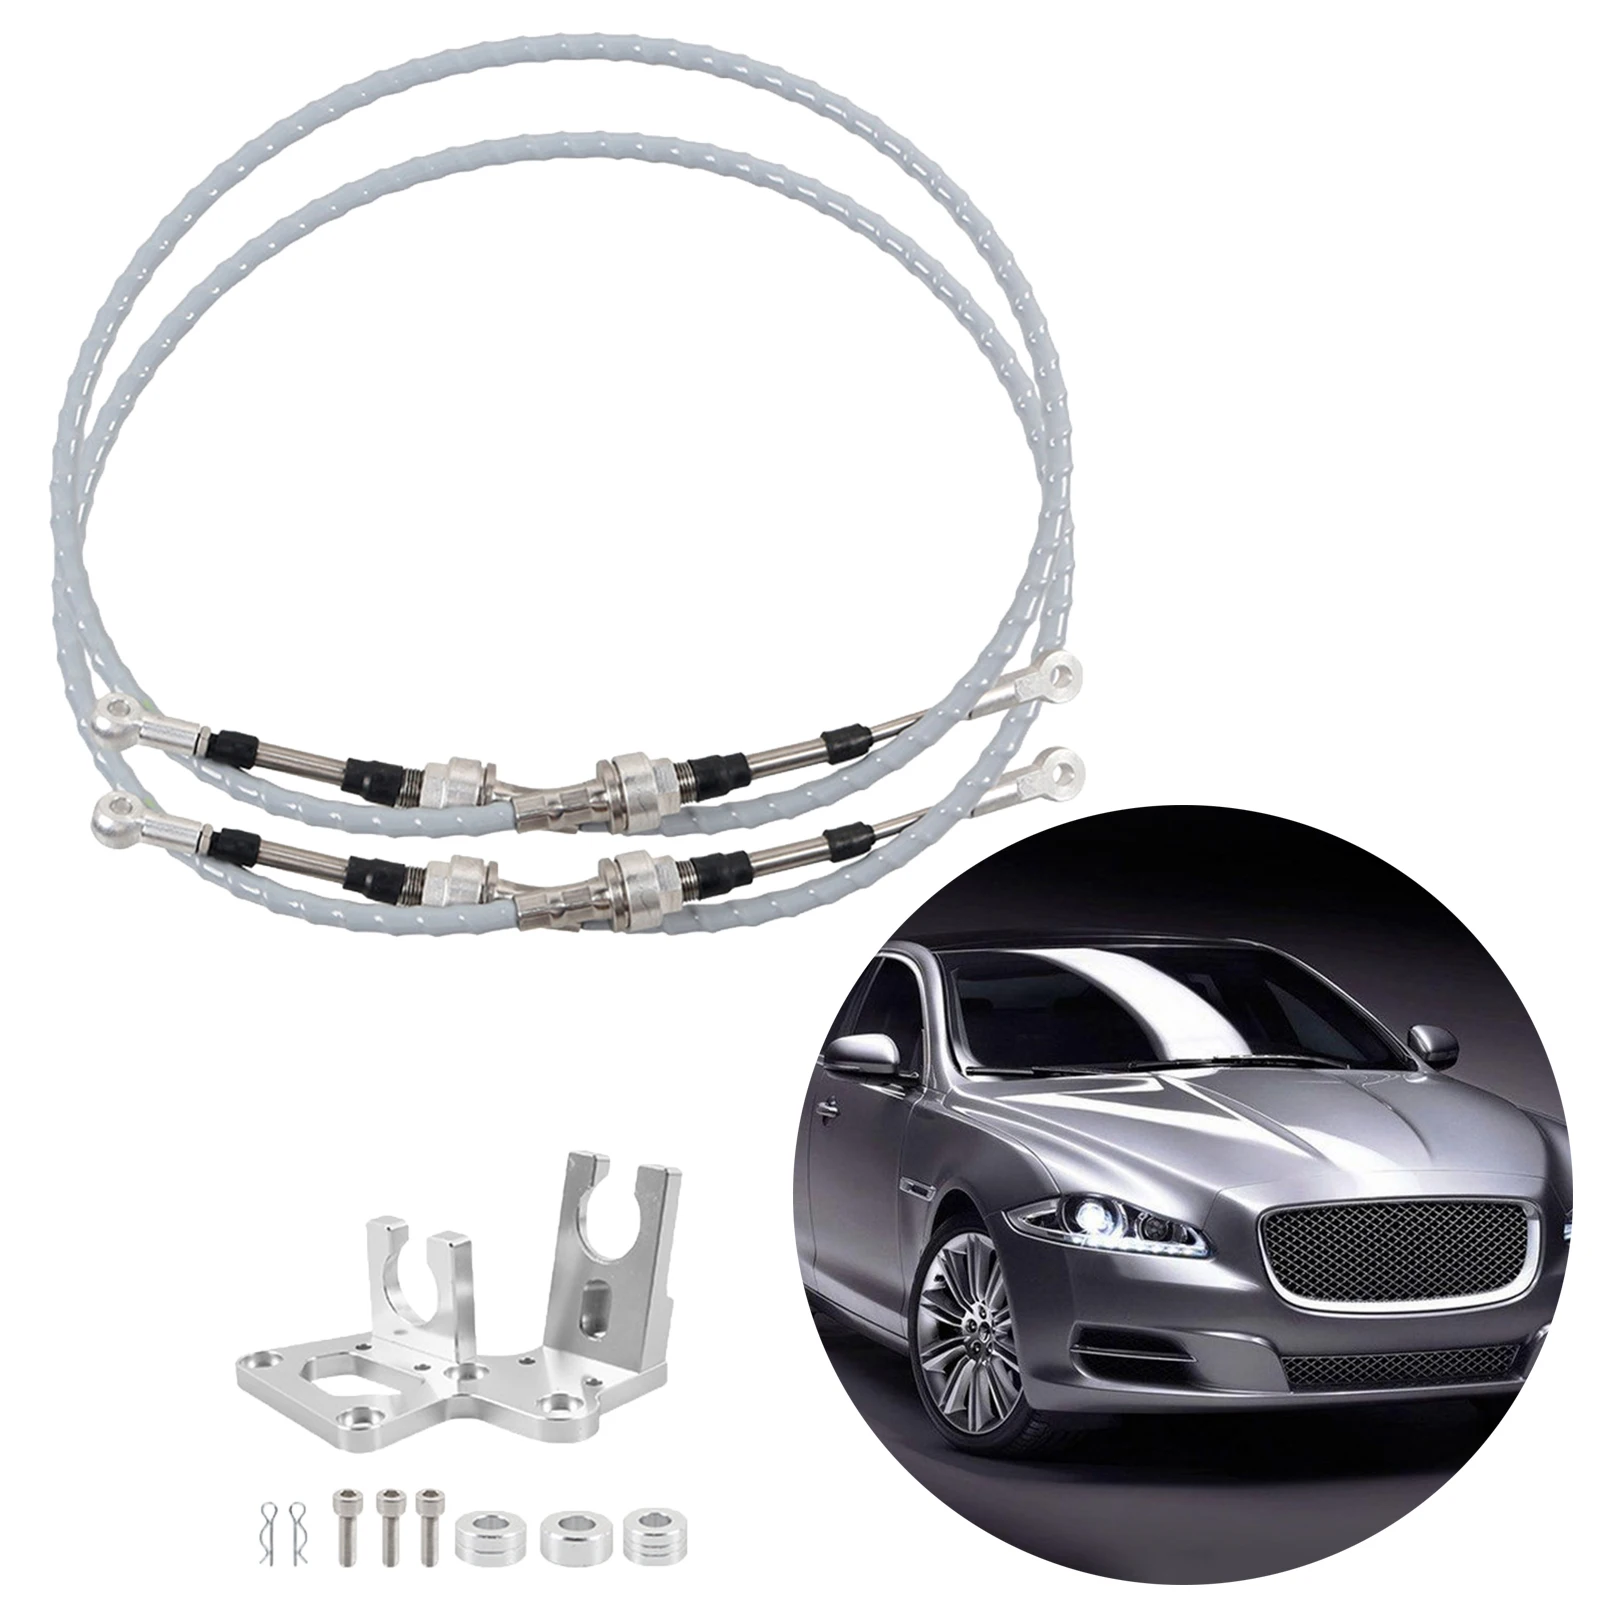 RSX Trans Shifter Cable Bracket Kit for Honda Civic K Swap Series EF EG EK DC2 Super strong / stretch resistant